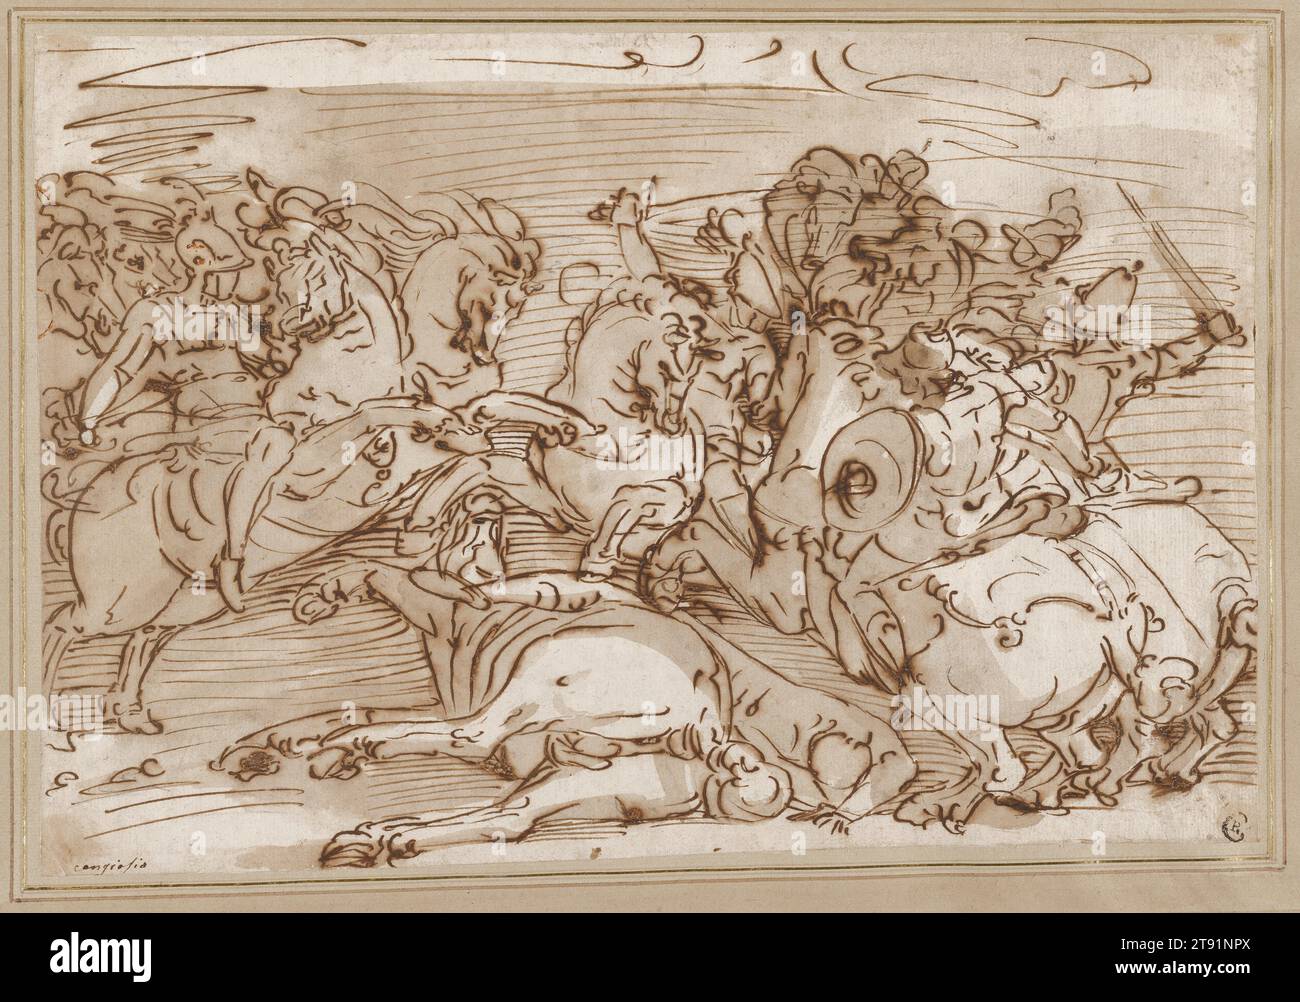 Fighting Horsemen, c. 1565-1566, Luca Cambiaso ou son atelier, italien (Gênes), italien (Gênes), 1527 - 1585, 9 1/2 x 13 7/8 po. (24,13 x 35,24 cm) (feuille)19 3/4 × 23 3/4 po (50,17 × 60,33 cm) (cadre extérieur), stylo et encre brune et brun lavis sur craie noire, Italie, 16e siècle, le dessinateur virtuose Luca Cambiaso était le principal artiste de Gênes du 16e siècle. Il était si prolifique que sa femme et son serviteur auraient allumé le feu avec ses dessins. Malgré cela, des milliers d'études de sa main survivent, plus que par tout autre artiste de la Renaissance Banque D'Images